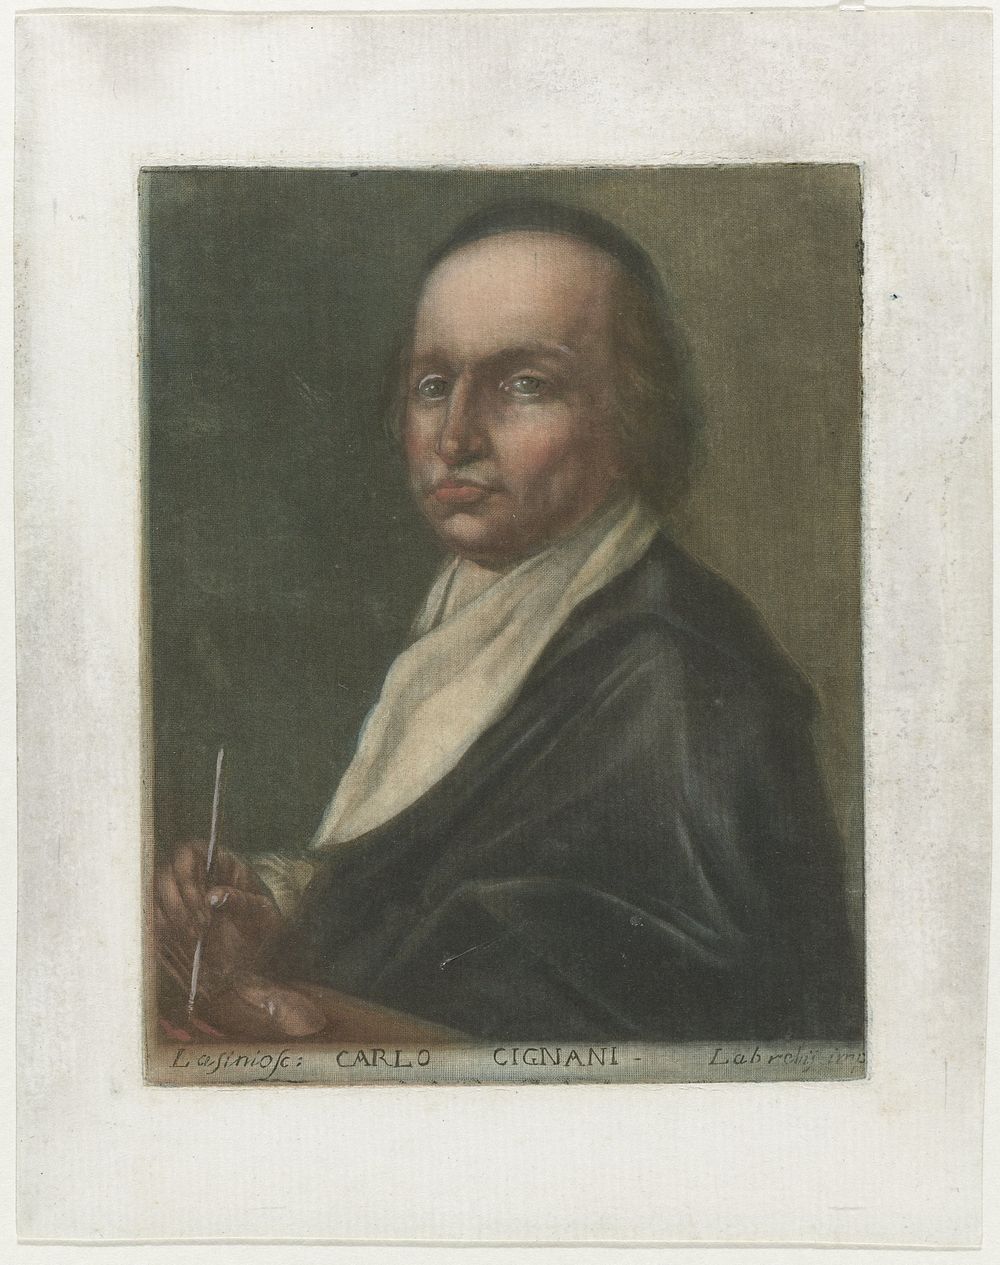 Portret kunstenaar Carlo Cignani (1789) by Carlo Lasinio and Labrelis